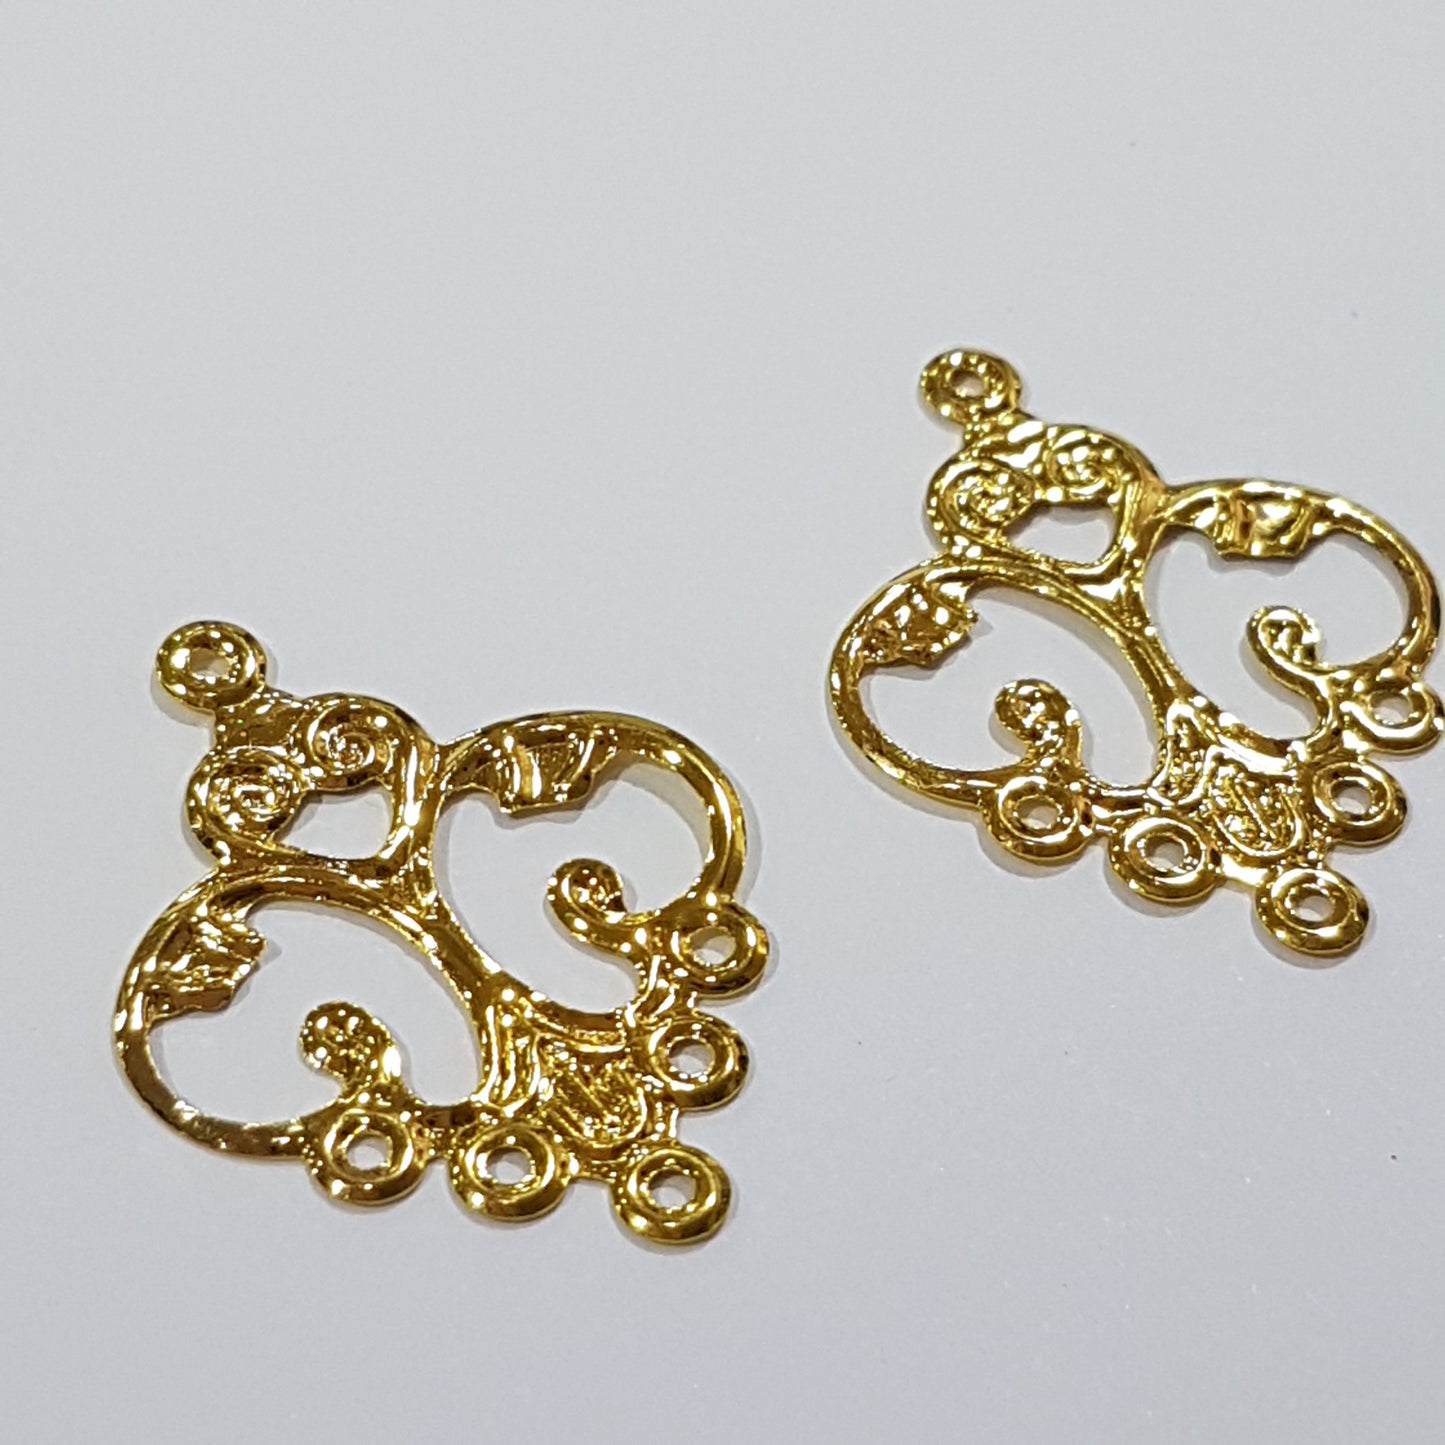 2pc Gold Chandelier Earring Findings